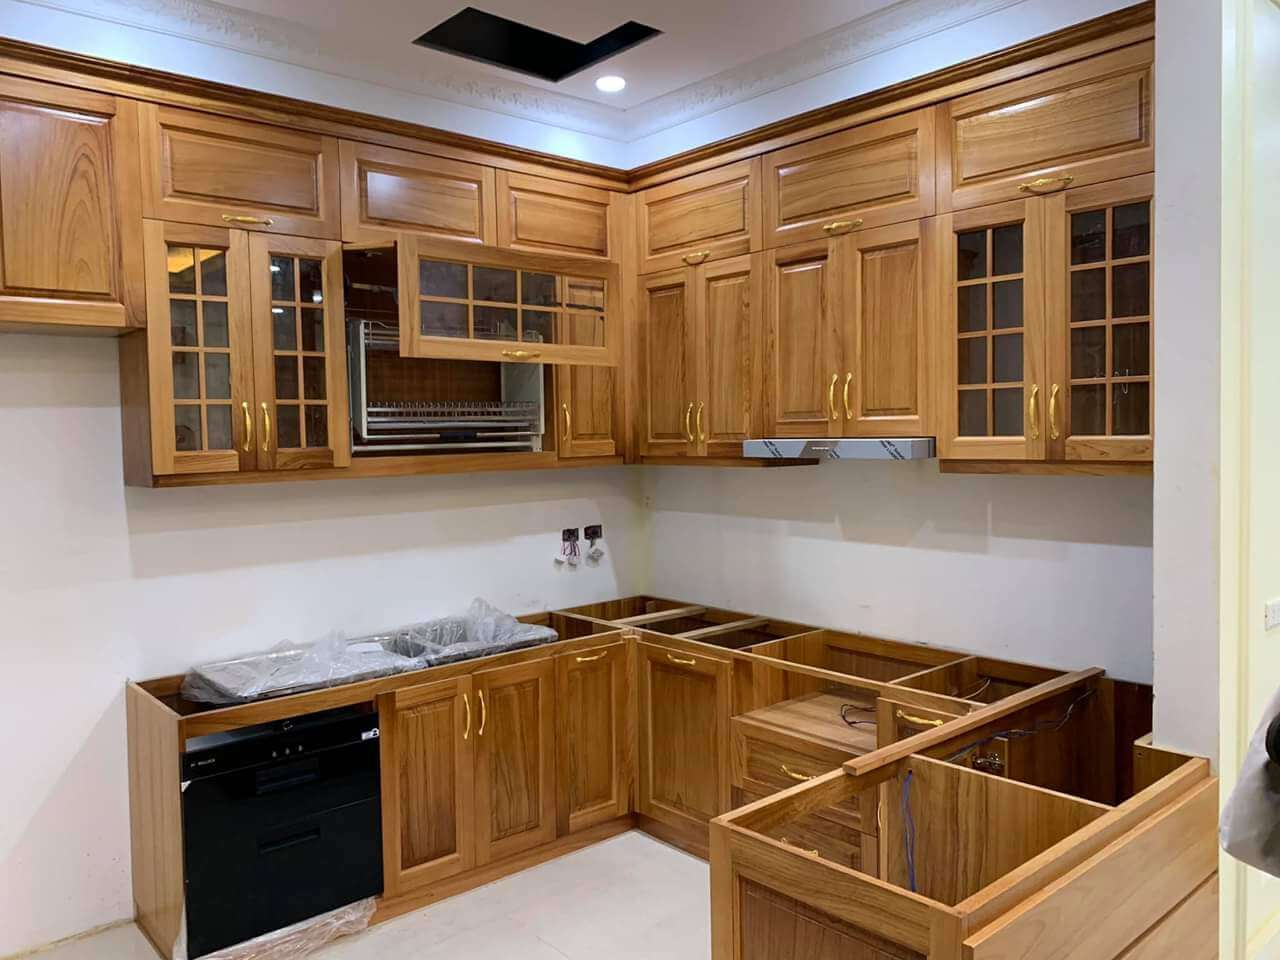 Toàn bộ nội thất trong phòng bếp đều được chế tác từ gỗ Gõ Đỏ sang trọng